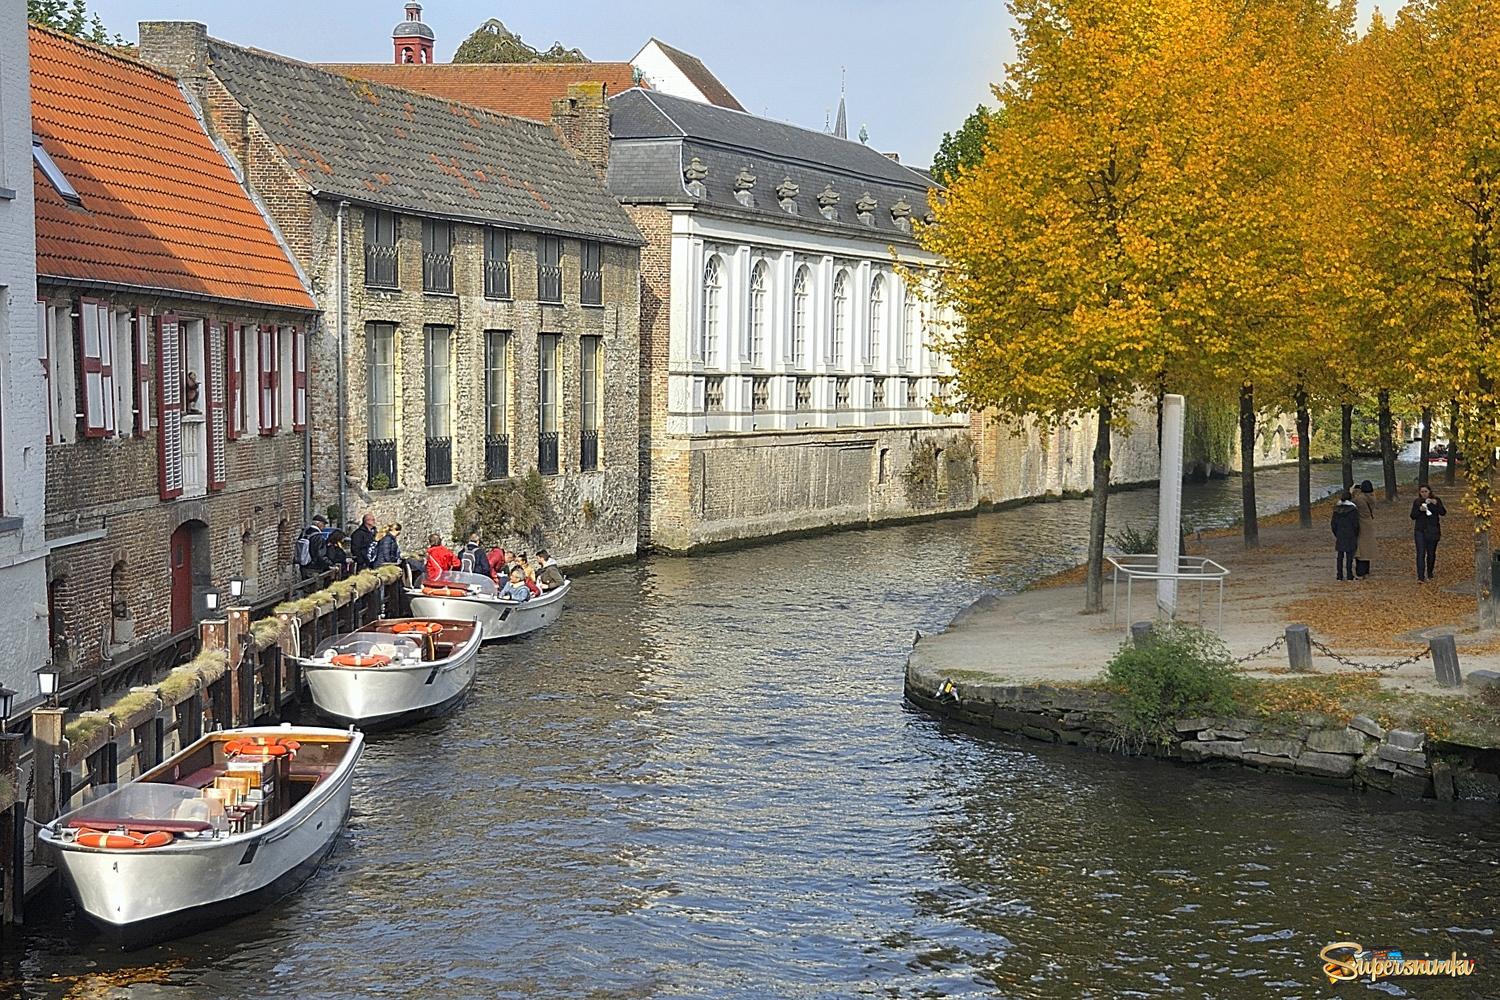 Autumn in Bruges.